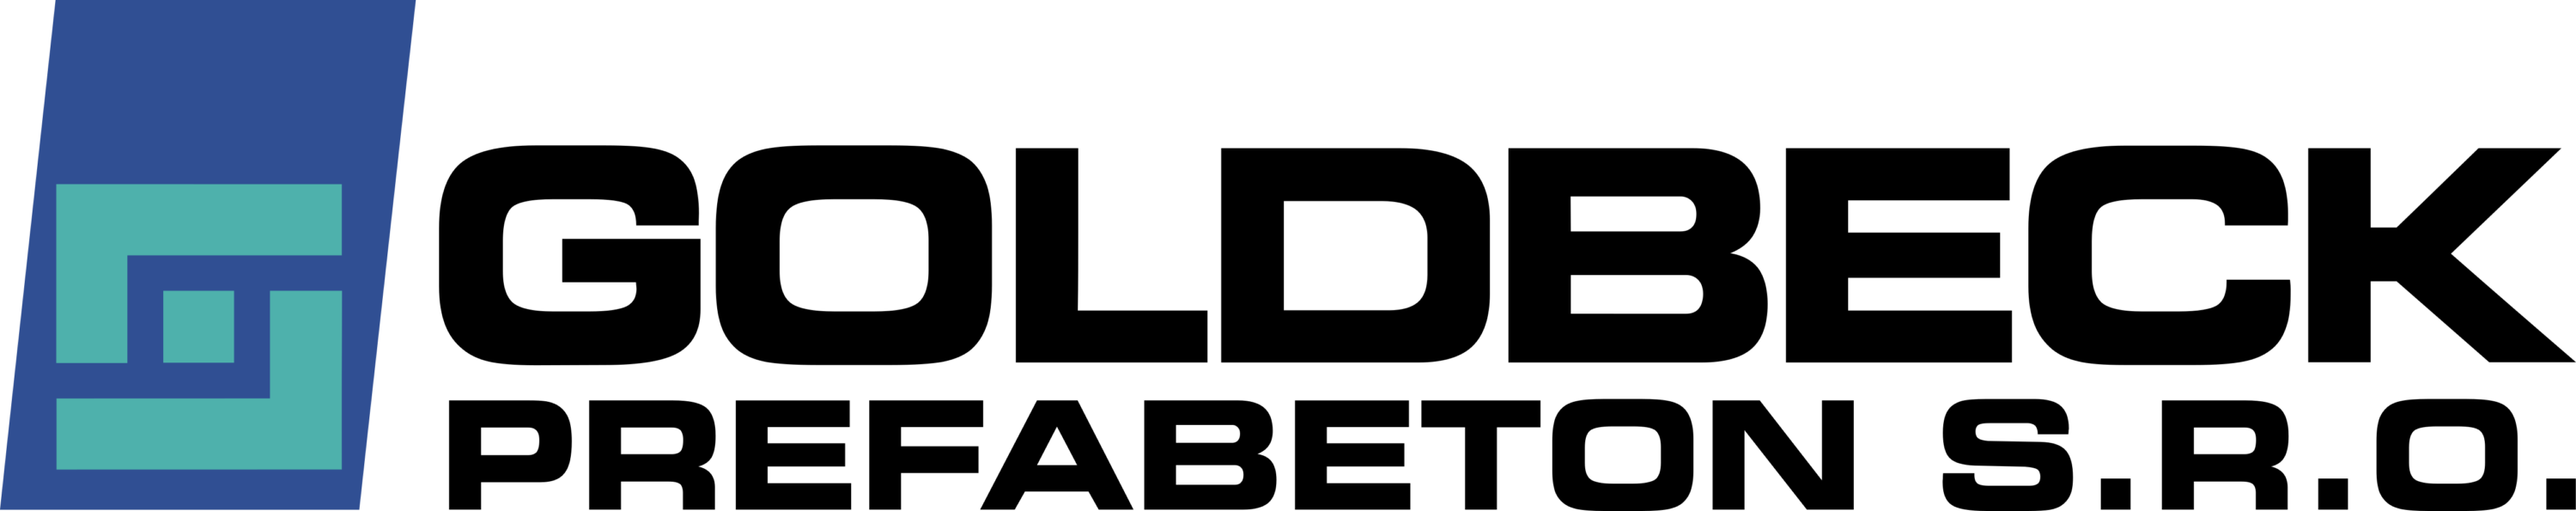 Goldbeck Logo prefabeton